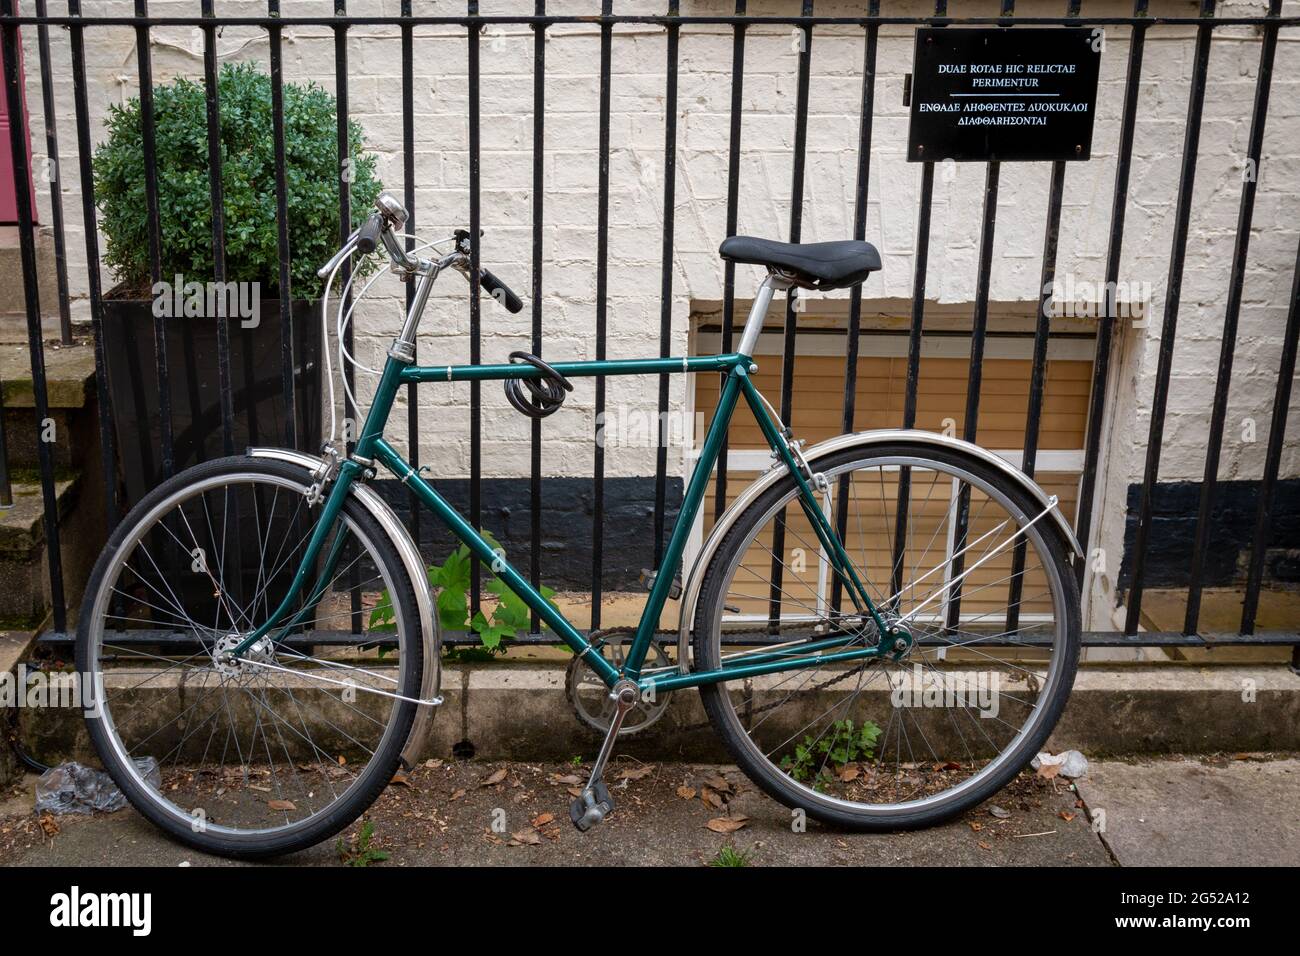 Ein Fahrrad ist an einen Zaun neben einem Schild angekettet, auf dem die Leute aufgefordert werden, ihre Fahrräder dort nicht in lateinischer und griechischer Sprache zu parken. Cambridge, Großbritannien Stockfoto